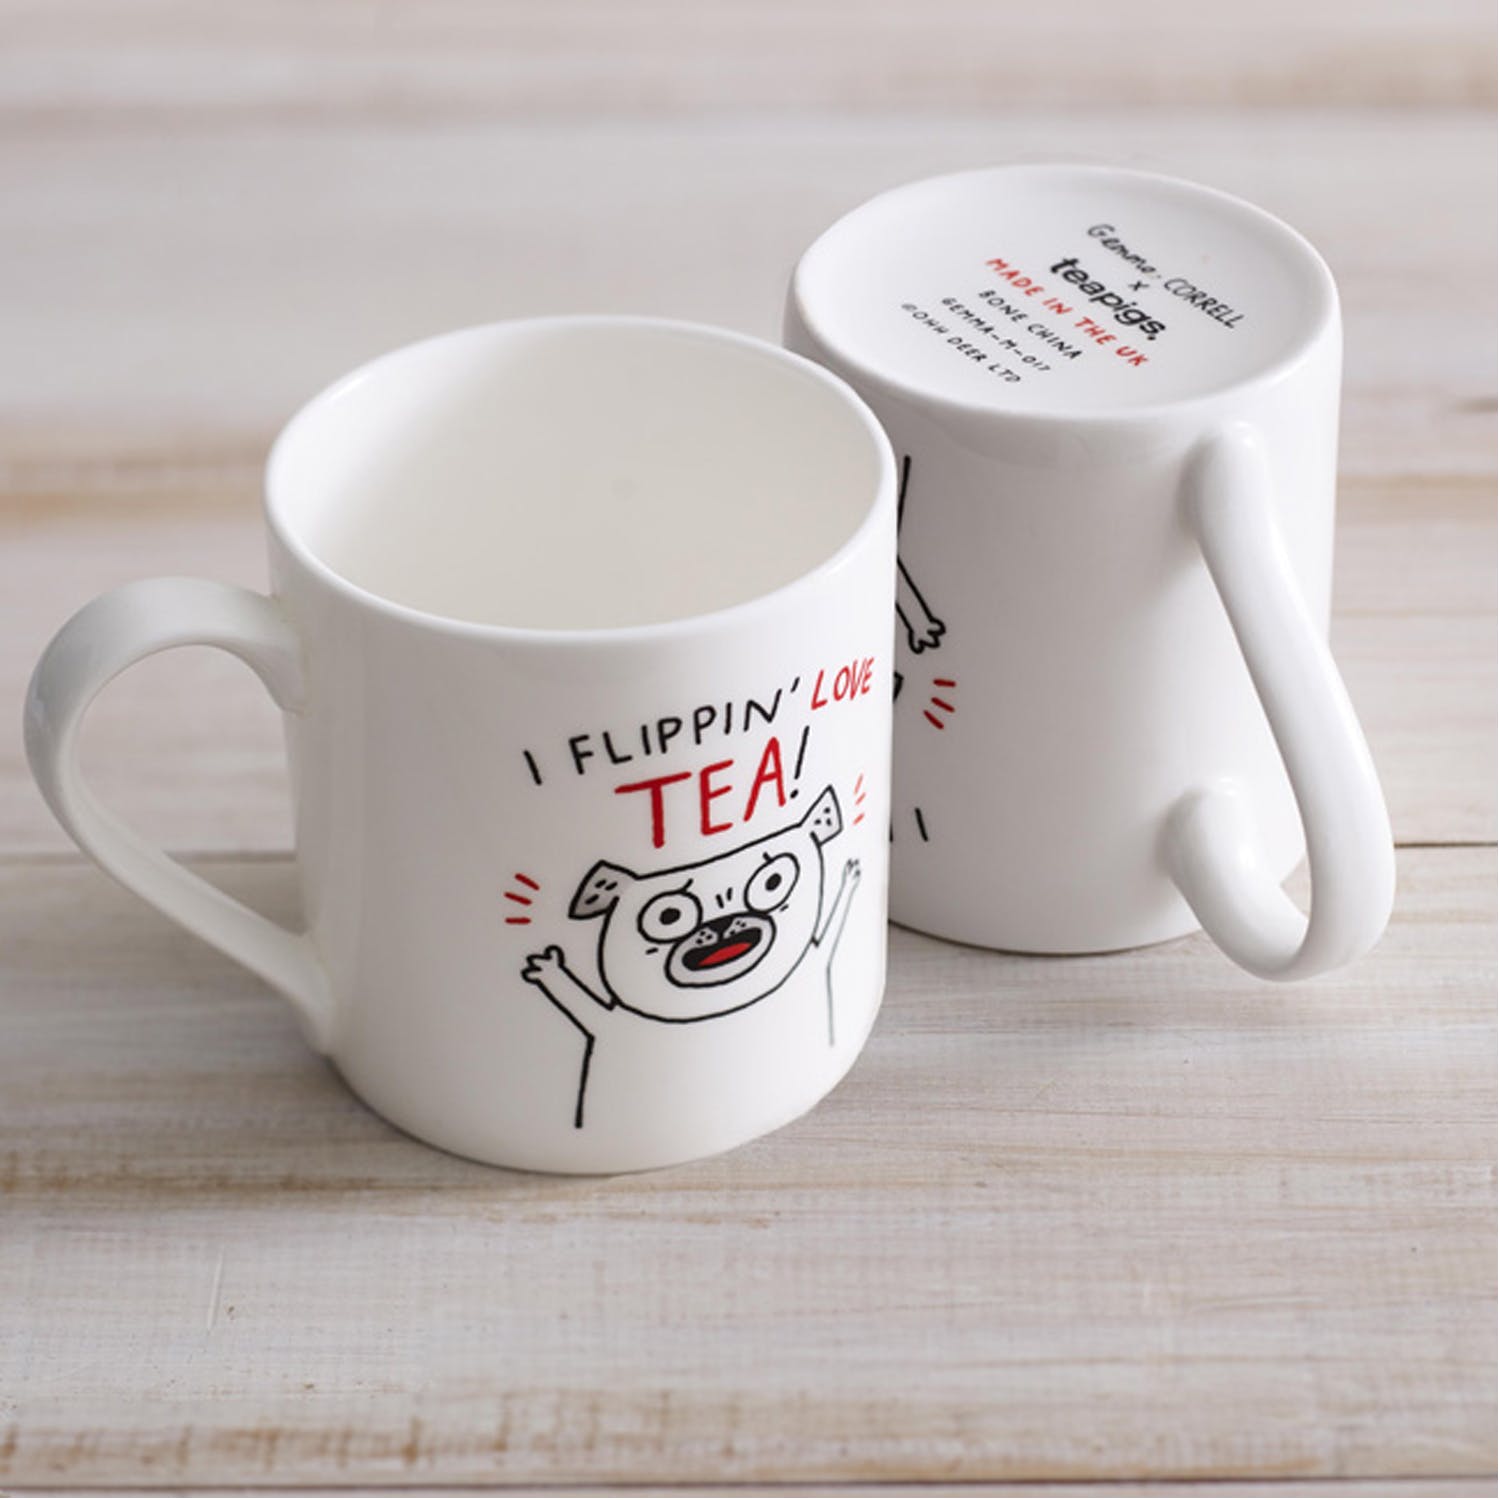 "I flippin' love tea!" mug